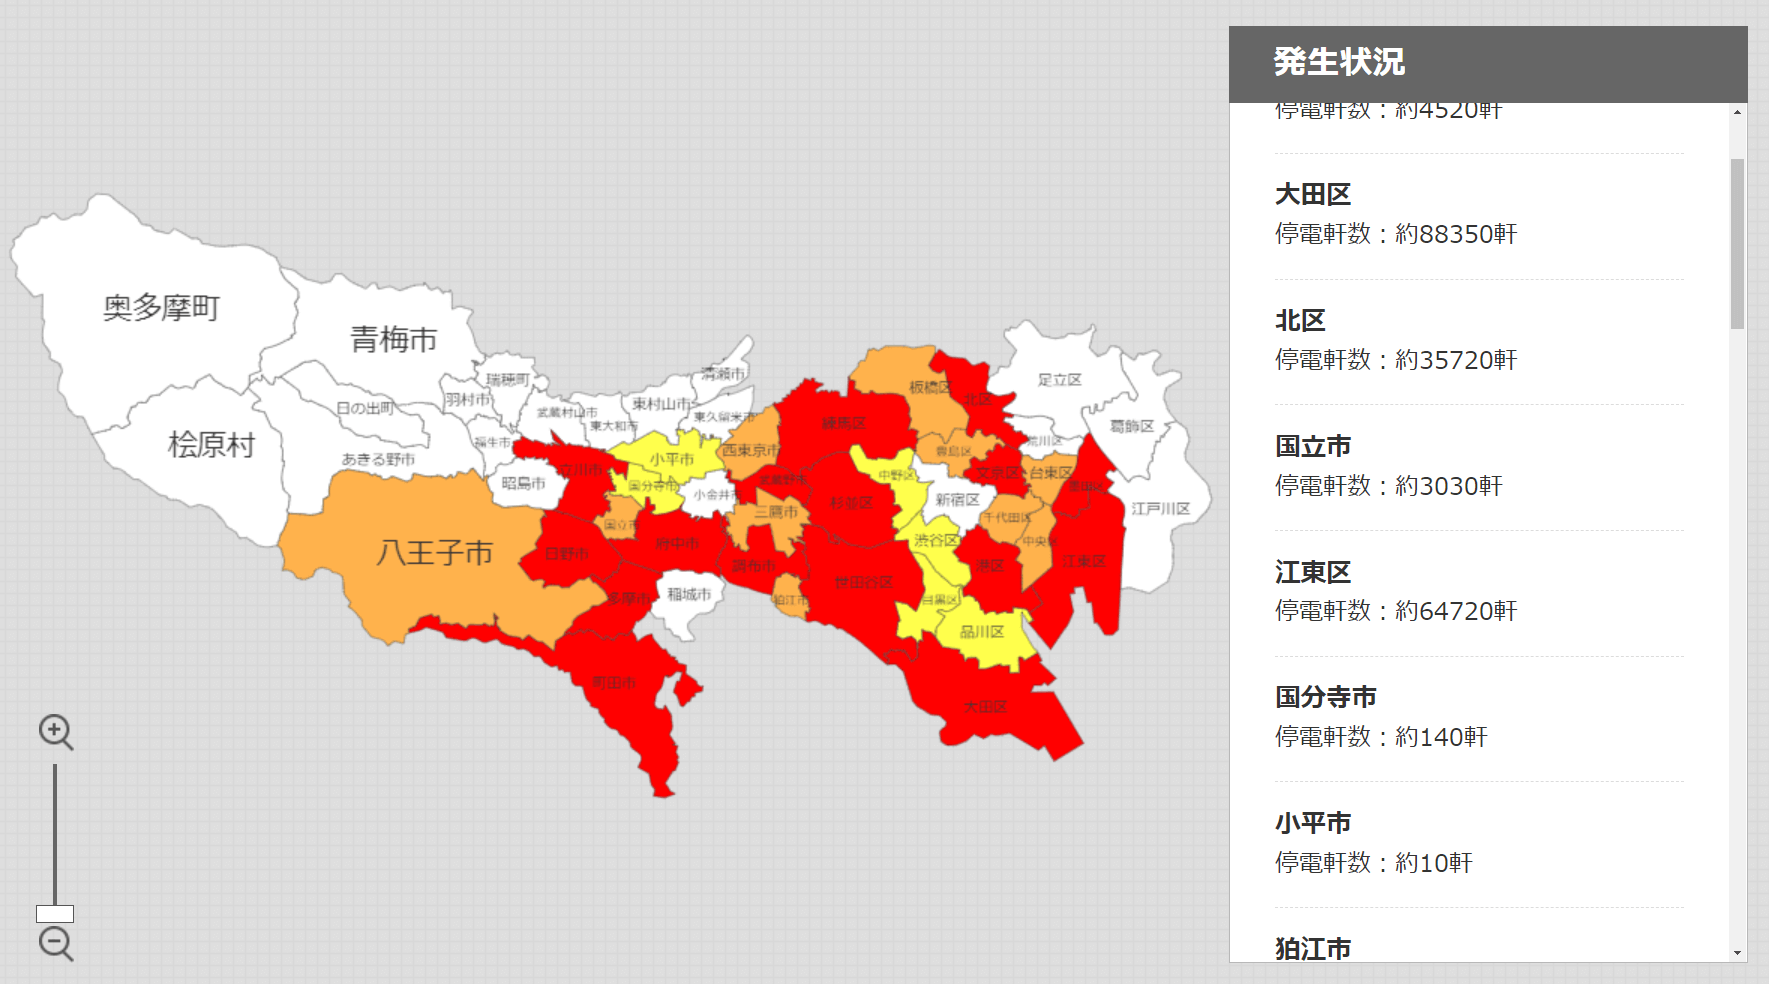 東京都、70万軒以上で停電